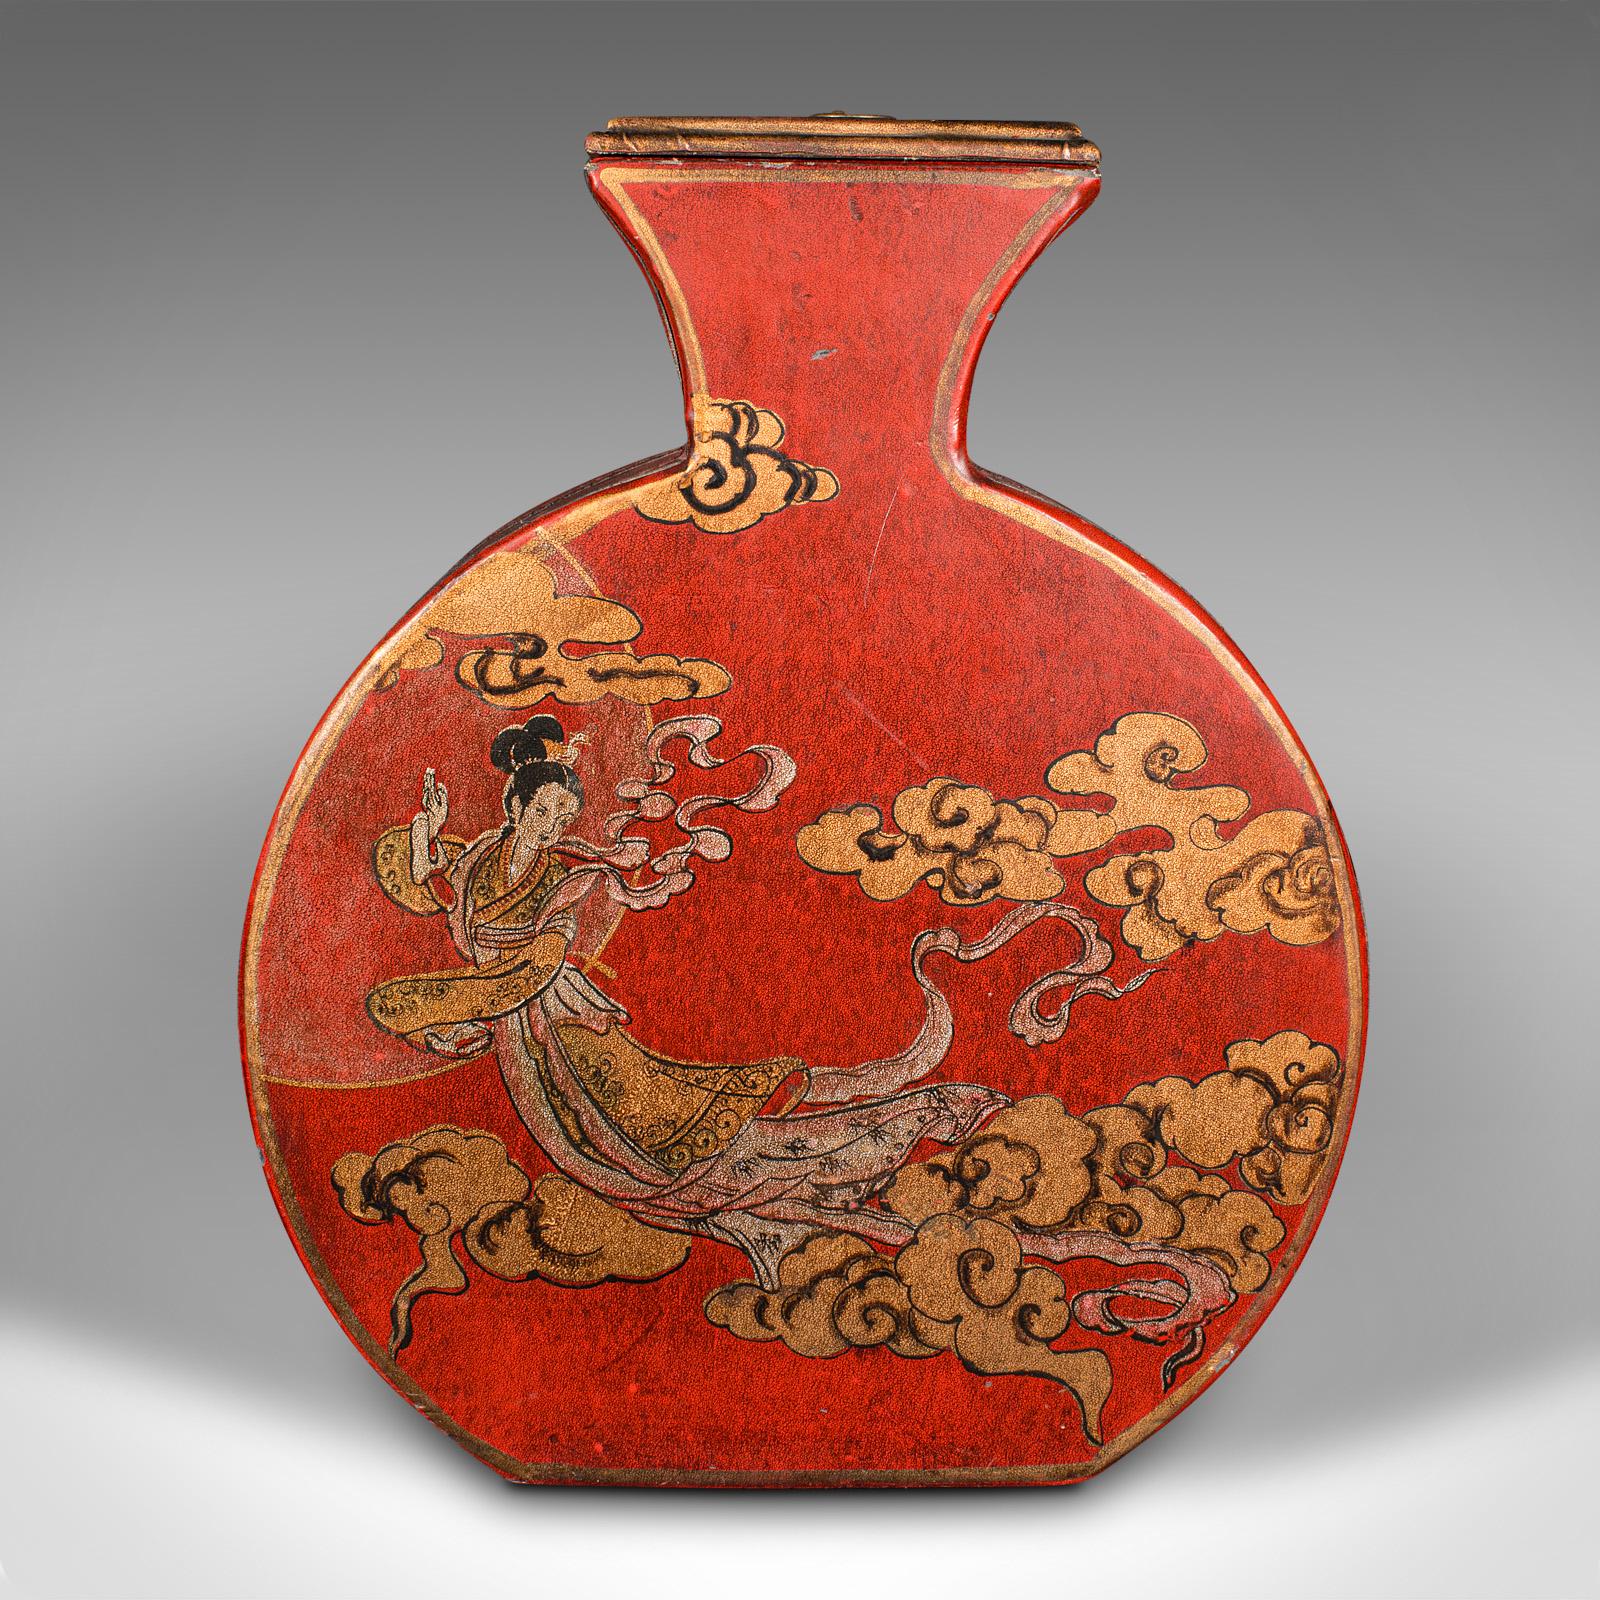 Dies ist eine kleine Vintage-Vase für Trockenblumen. Eine chinesische, mit Wachspapier überzogene dekorative Trommelurne aus dem späten 20. Jahrhundert, um 1970.

Prächtige Farben und traditionelles Dekor unterstreichen den Reiz der Chinoiserie
Mit